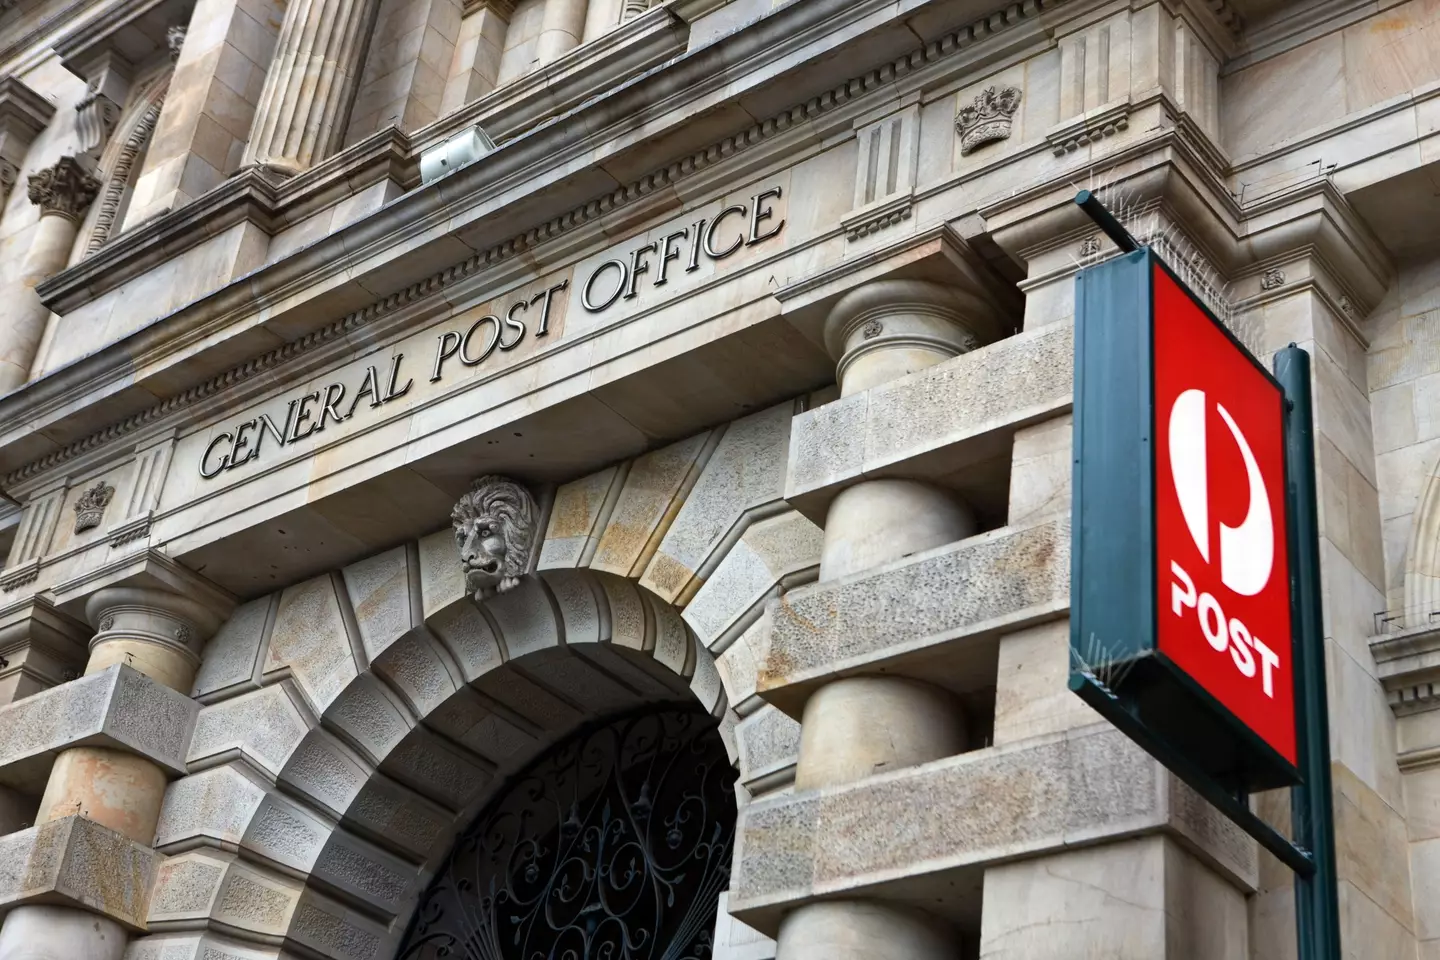 General Post Office, Adelaide, Australia.